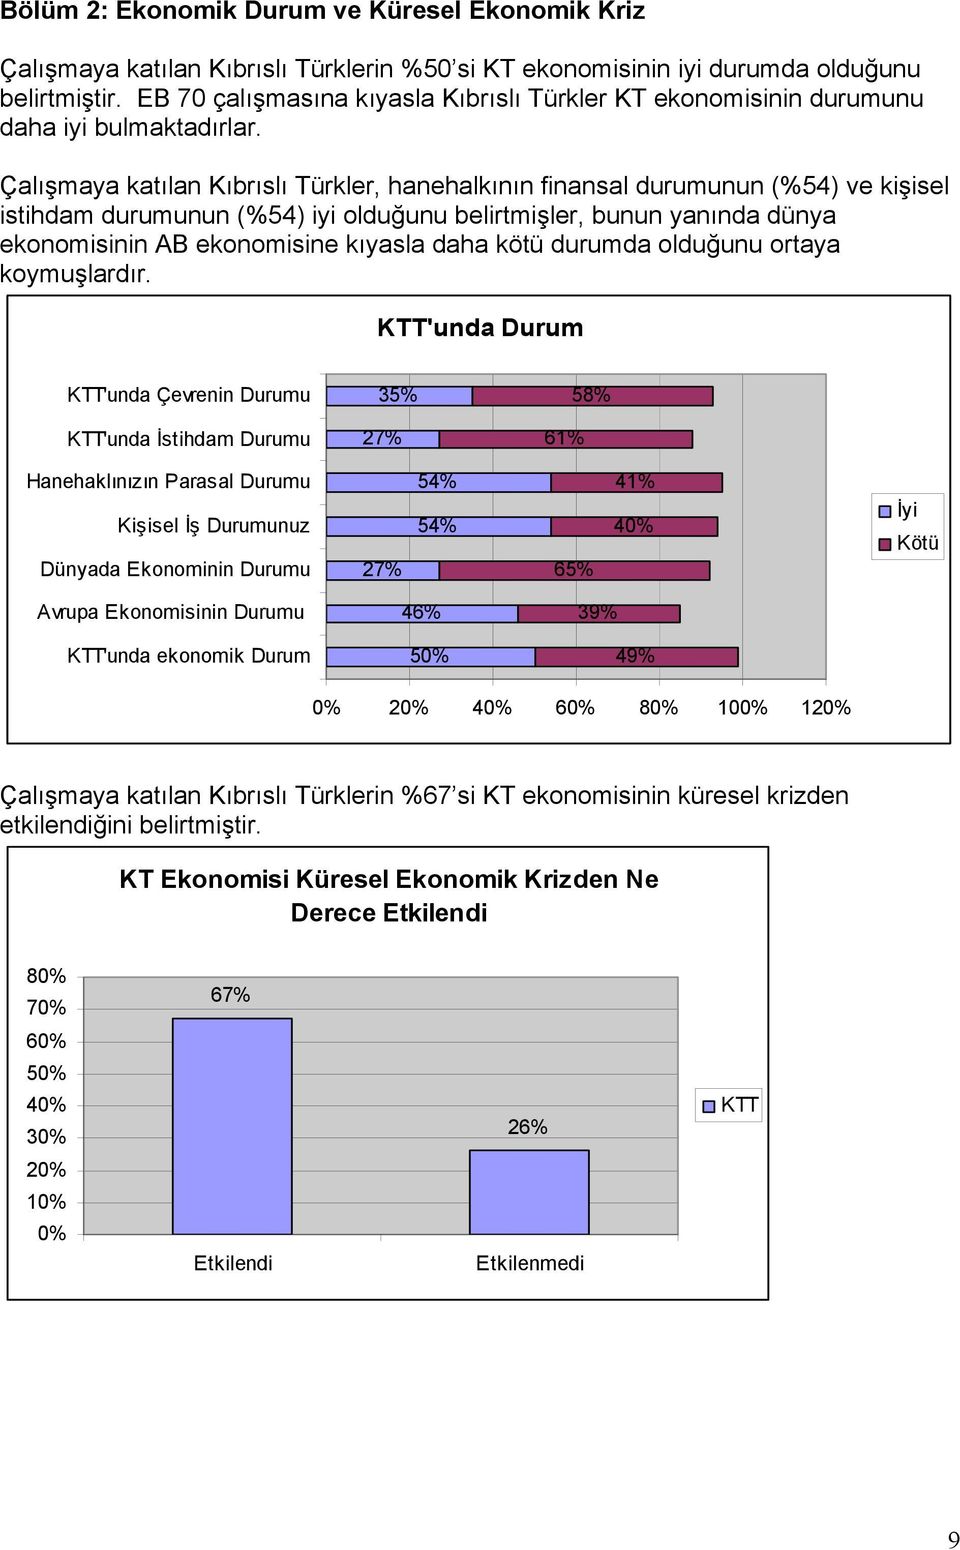 Çalışmaya katılan Kıbrıslı Türkler, hanehalkının finansal durumunun (%54) ve kişisel istihdam durumunun (%54) iyi olduğunu belirtmişler, bunun yanında dünya ekonomisinin AB ekonomisine kıyasla daha